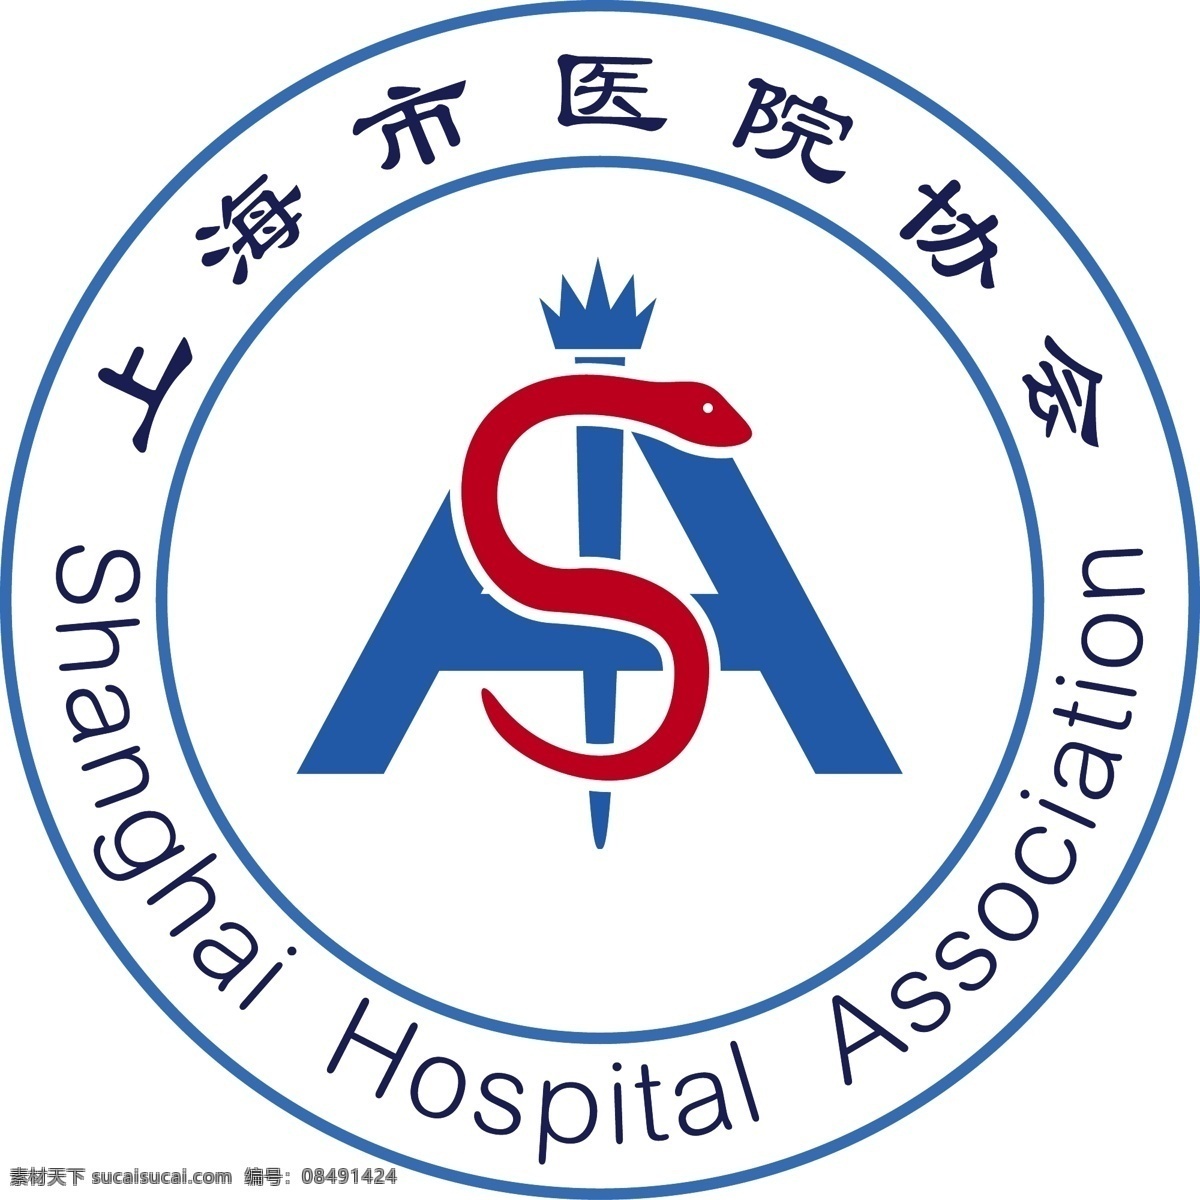 上海市 医院 协会 logo 通用 标志图标 企业 标志